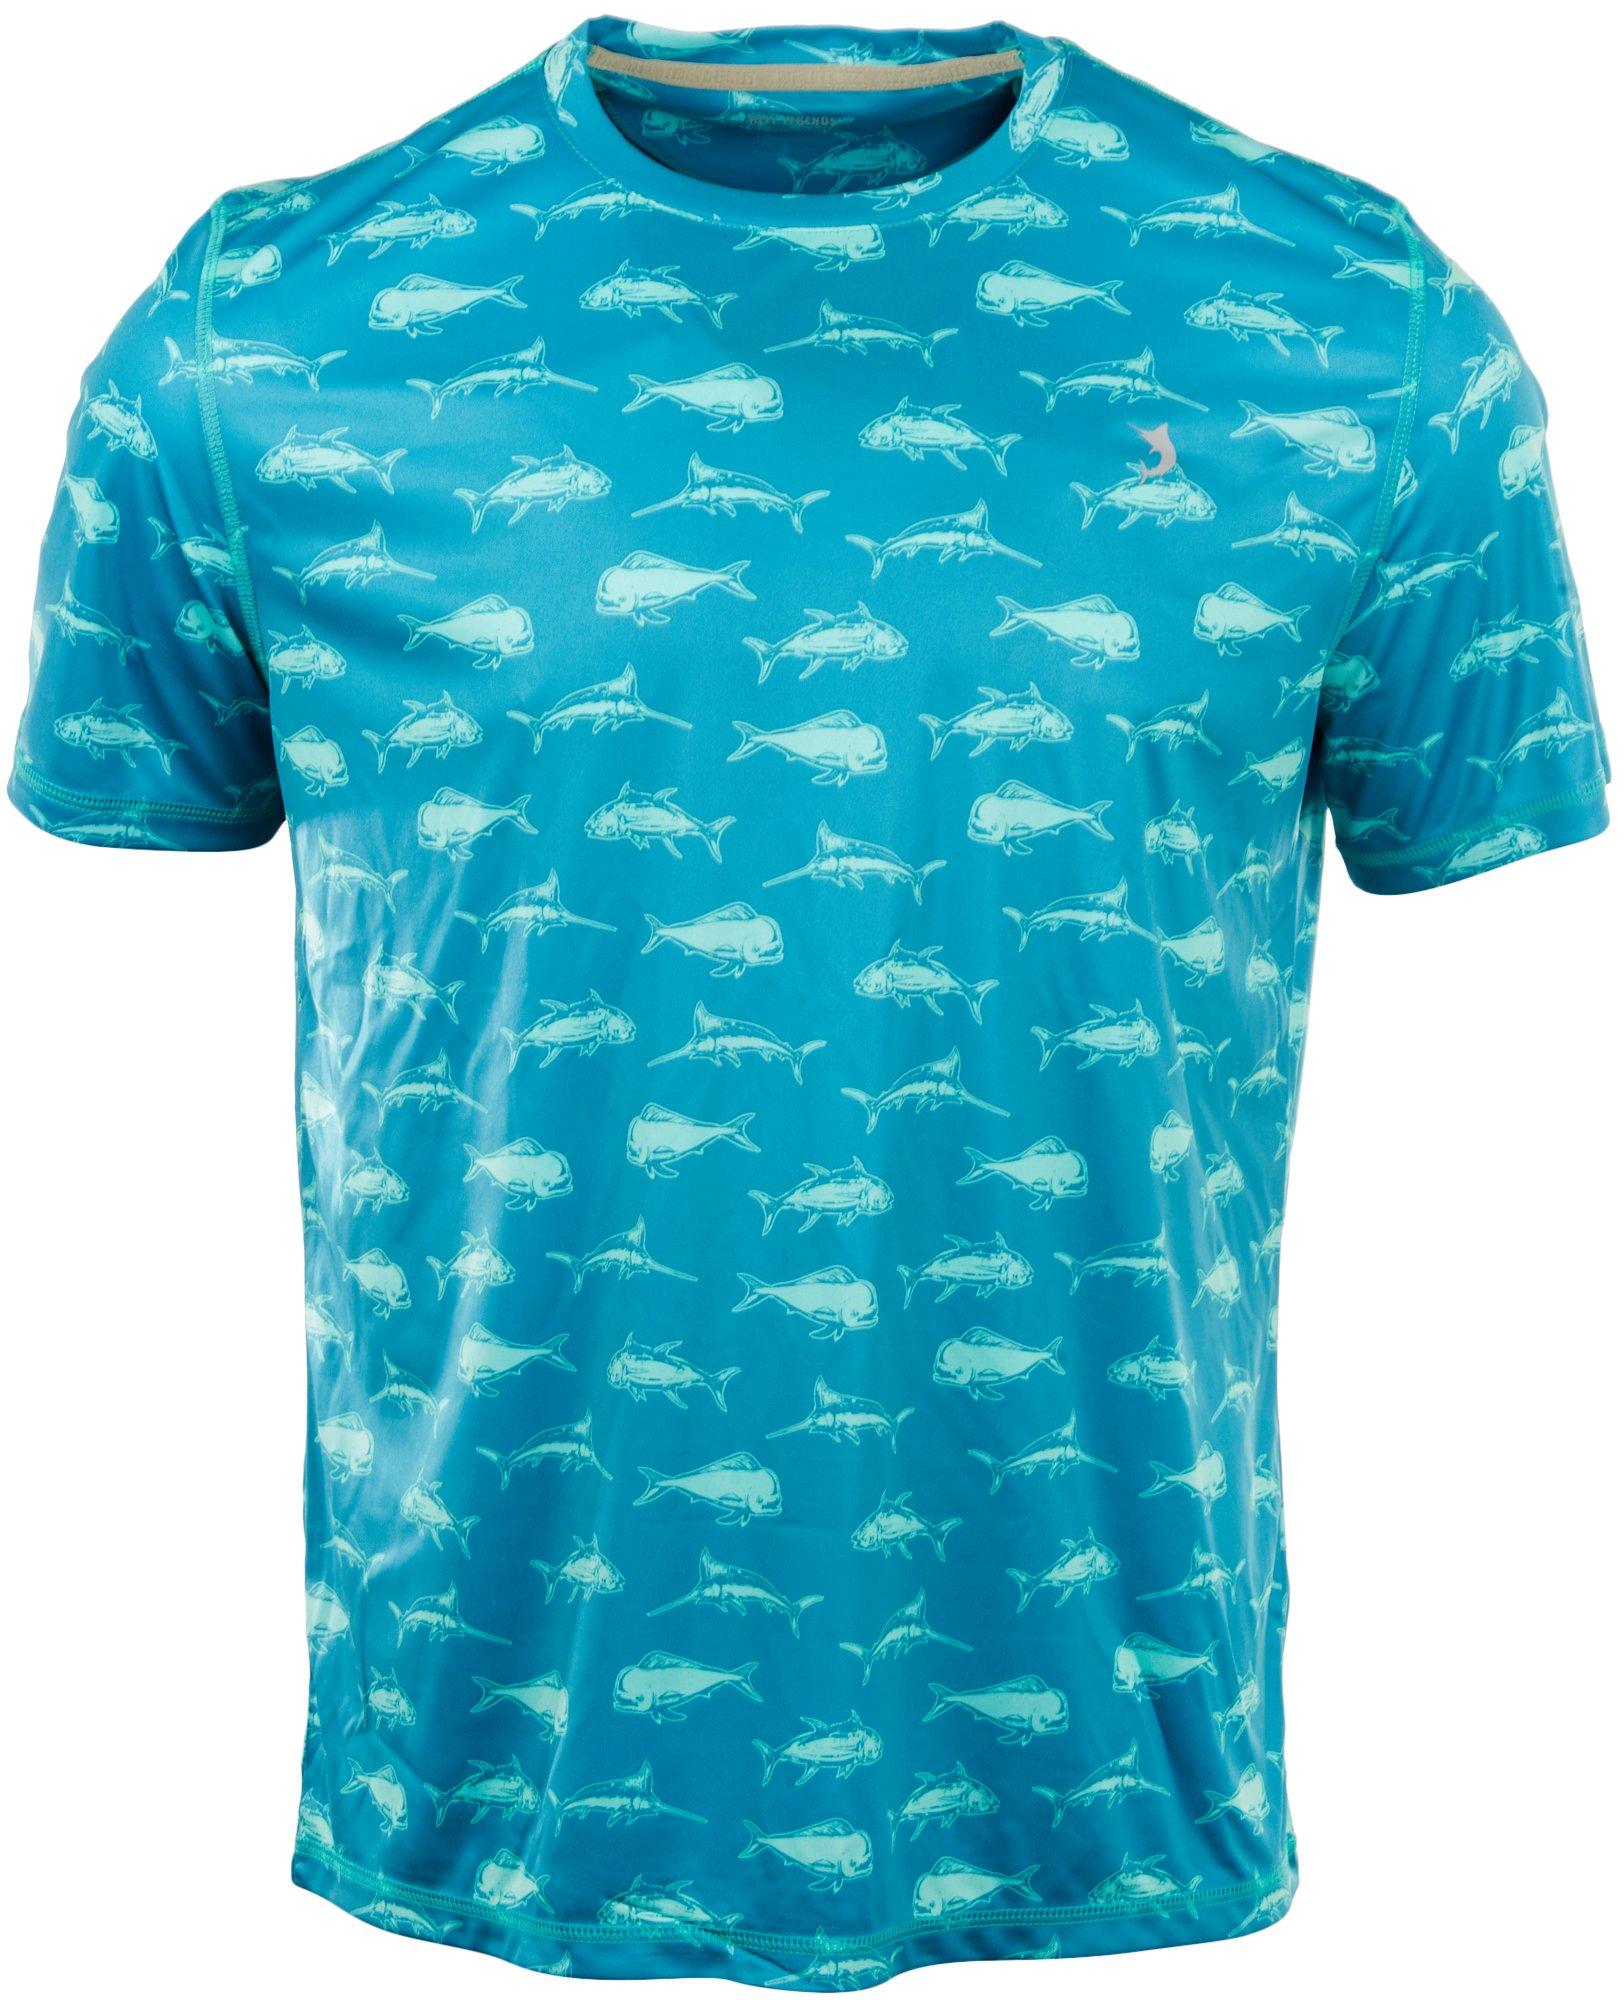 Reel Legends Mens Reel-Tec Fish Print Short Sleeve T-Shirt